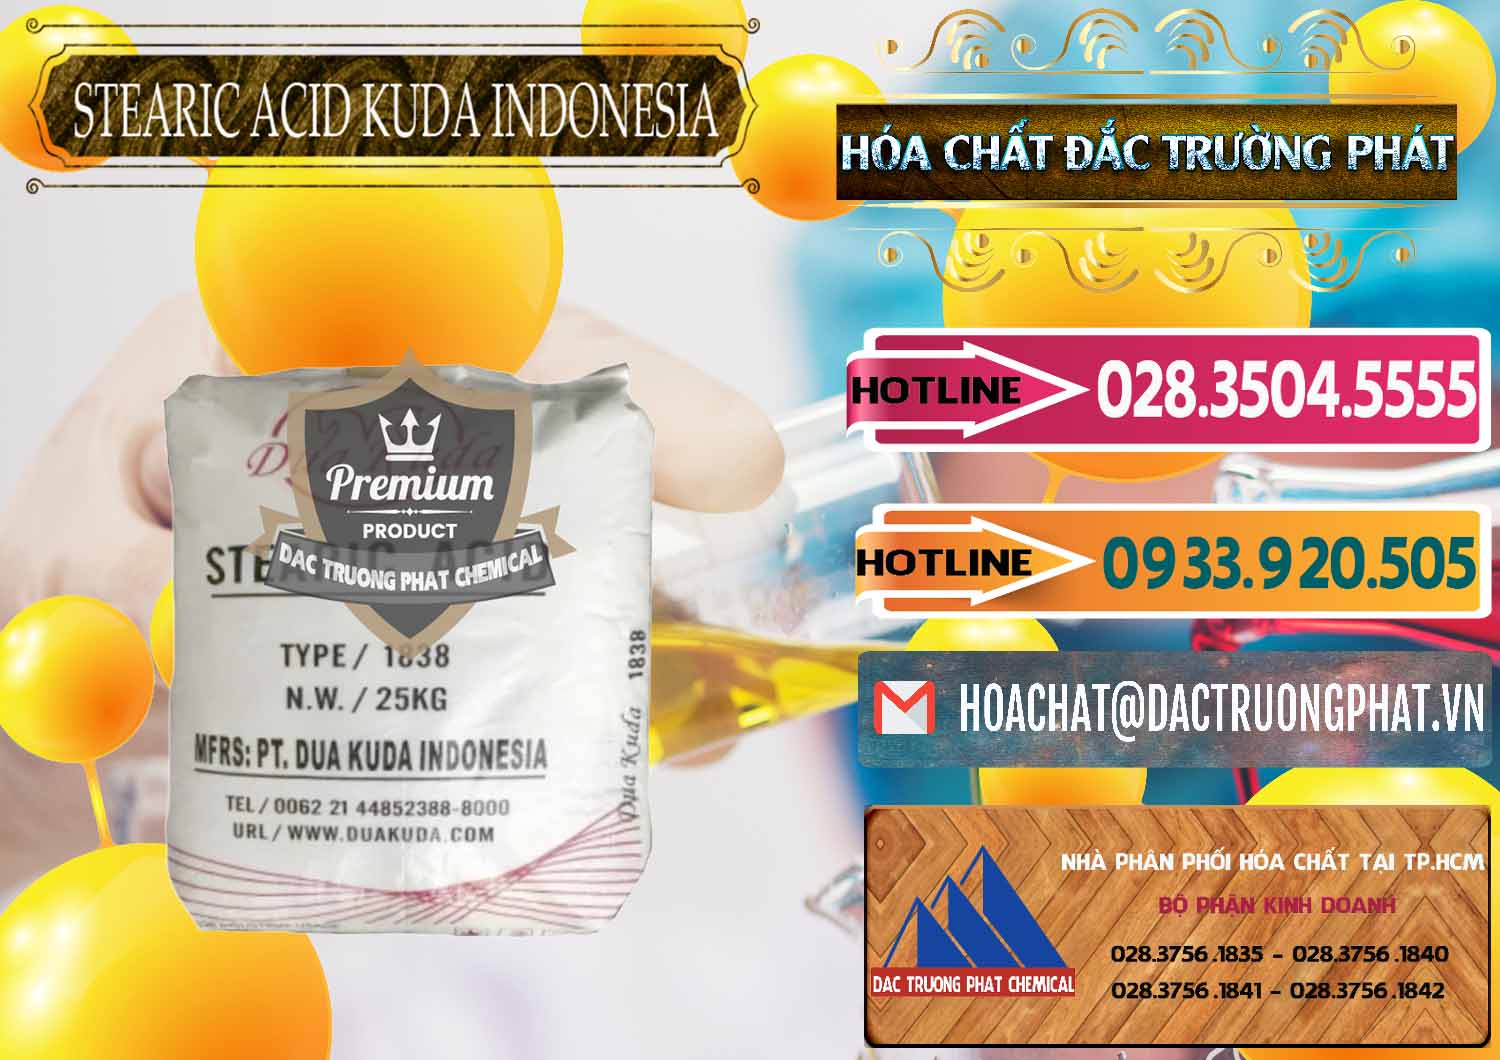 Cty phân phối - bán Axit Stearic - Stearic Acid Dua Kuda Indonesia - 0388 - Chuyên kinh doanh & cung cấp hóa chất tại TP.HCM - dactruongphat.vn